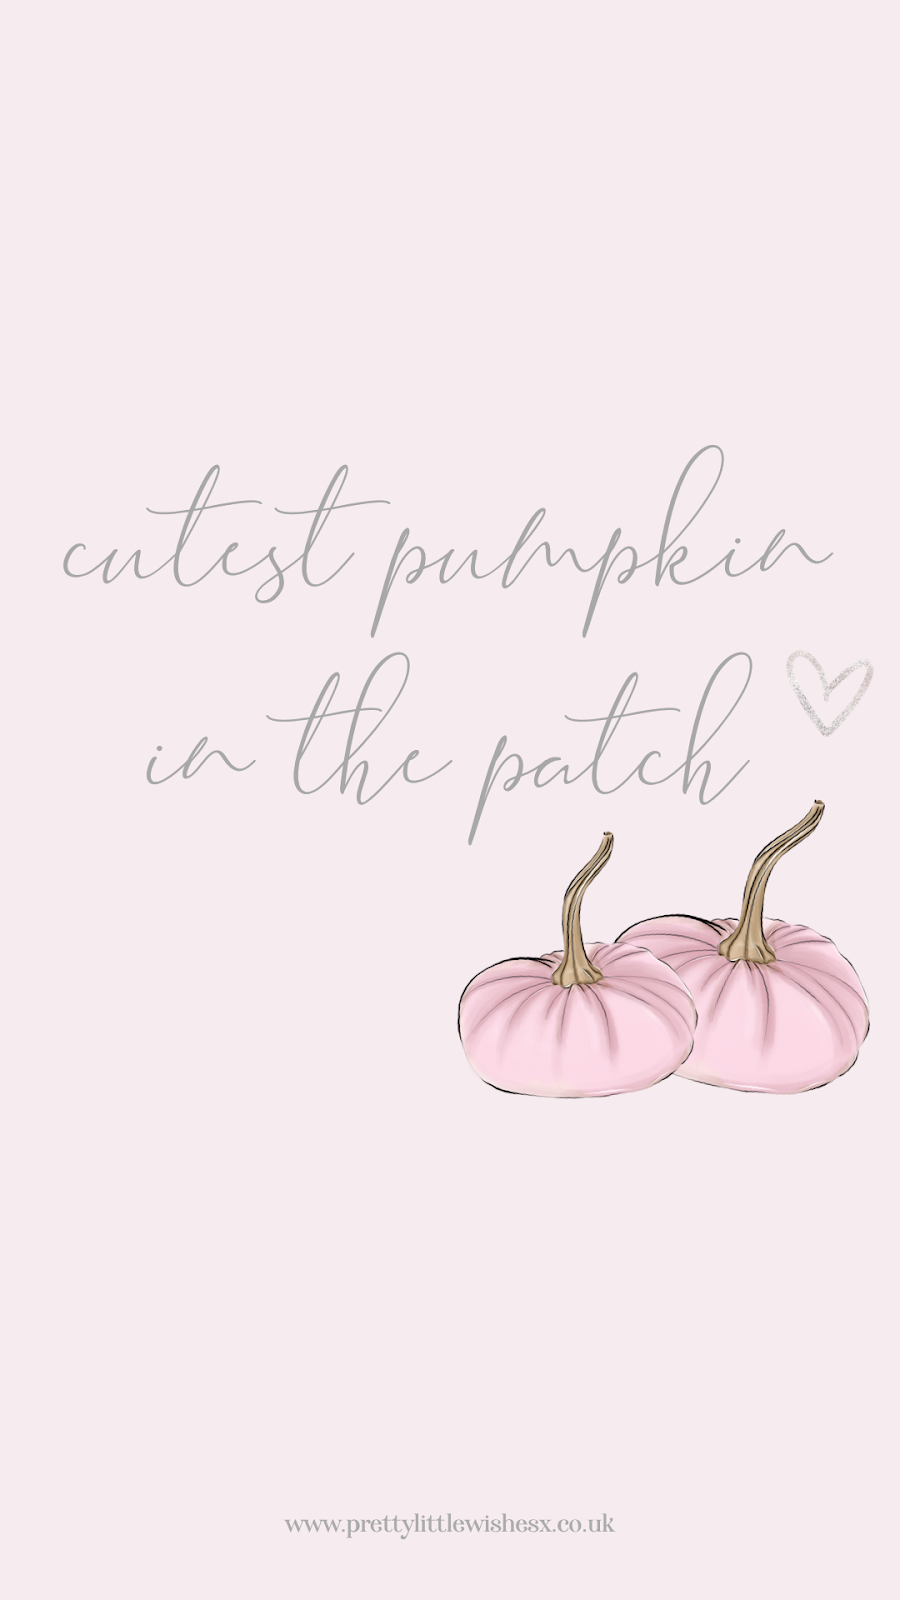 Pink pumpkin wallpaper Vectors  Illustrations for Free Download  Freepik